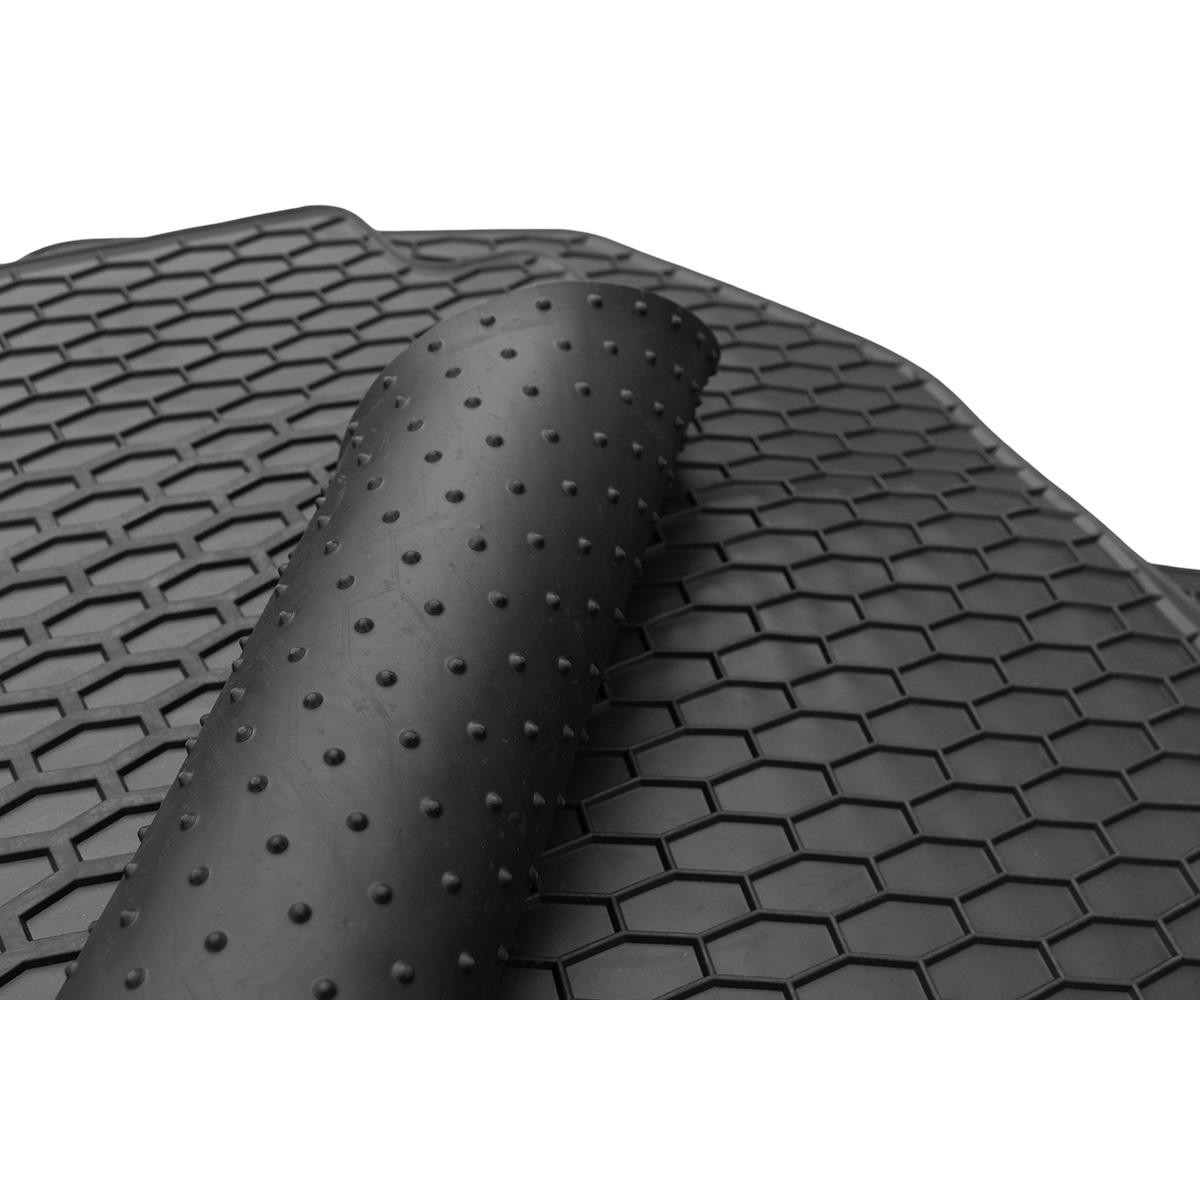 Guminiai kilimėliai SEAT LEON nuo 2020m. (PETROL/DIESEL) 4 vnt. / 222596 / juoda